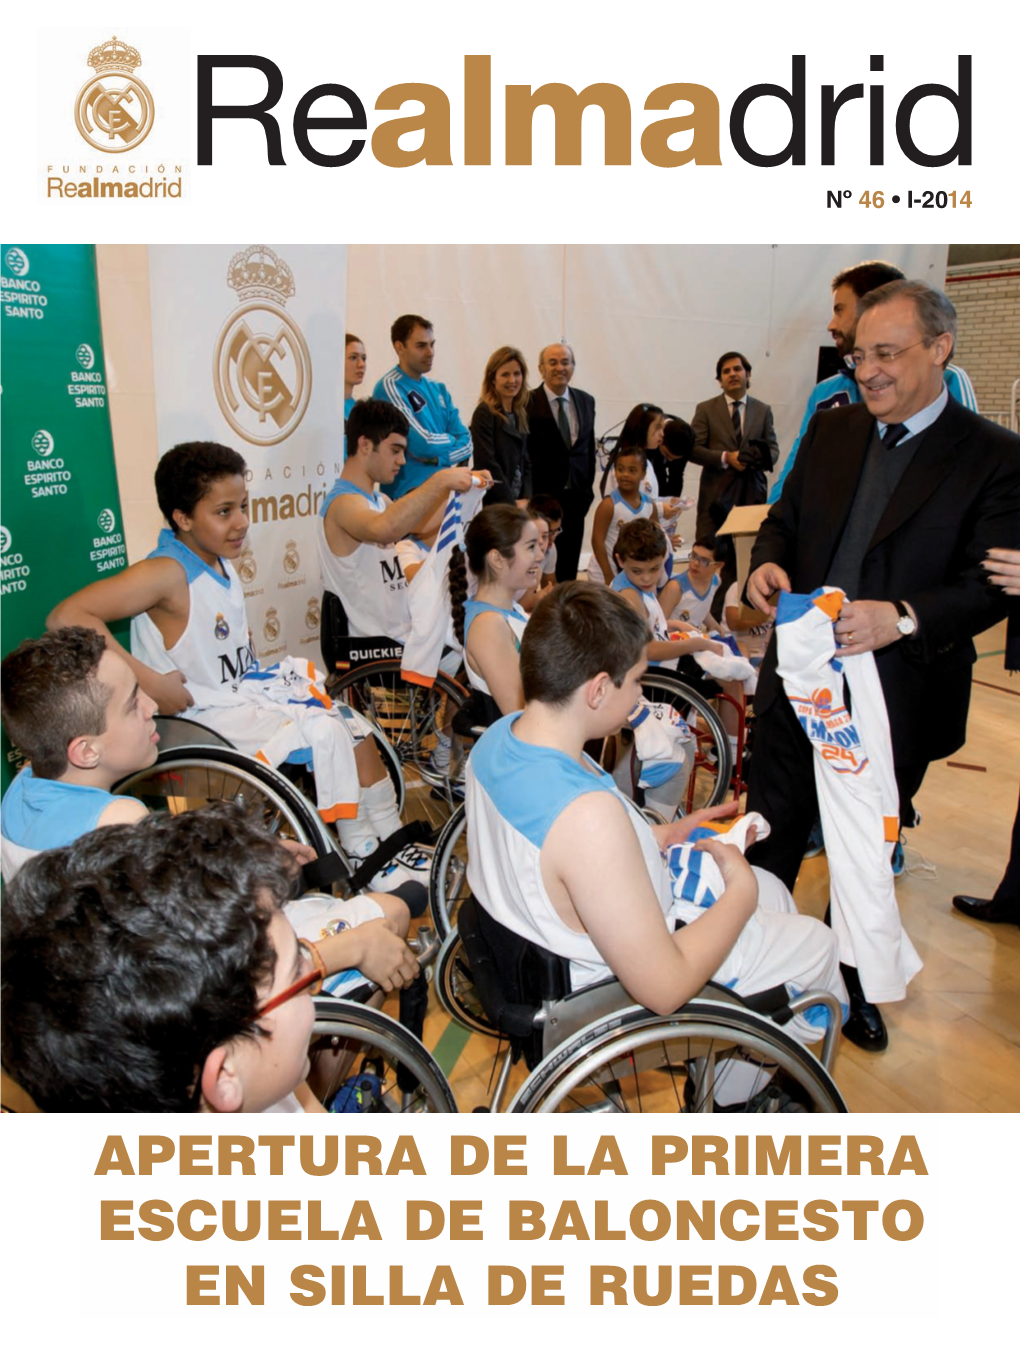 Apertura De La Primera Escuela De Baloncesto En Silla De Ruedas